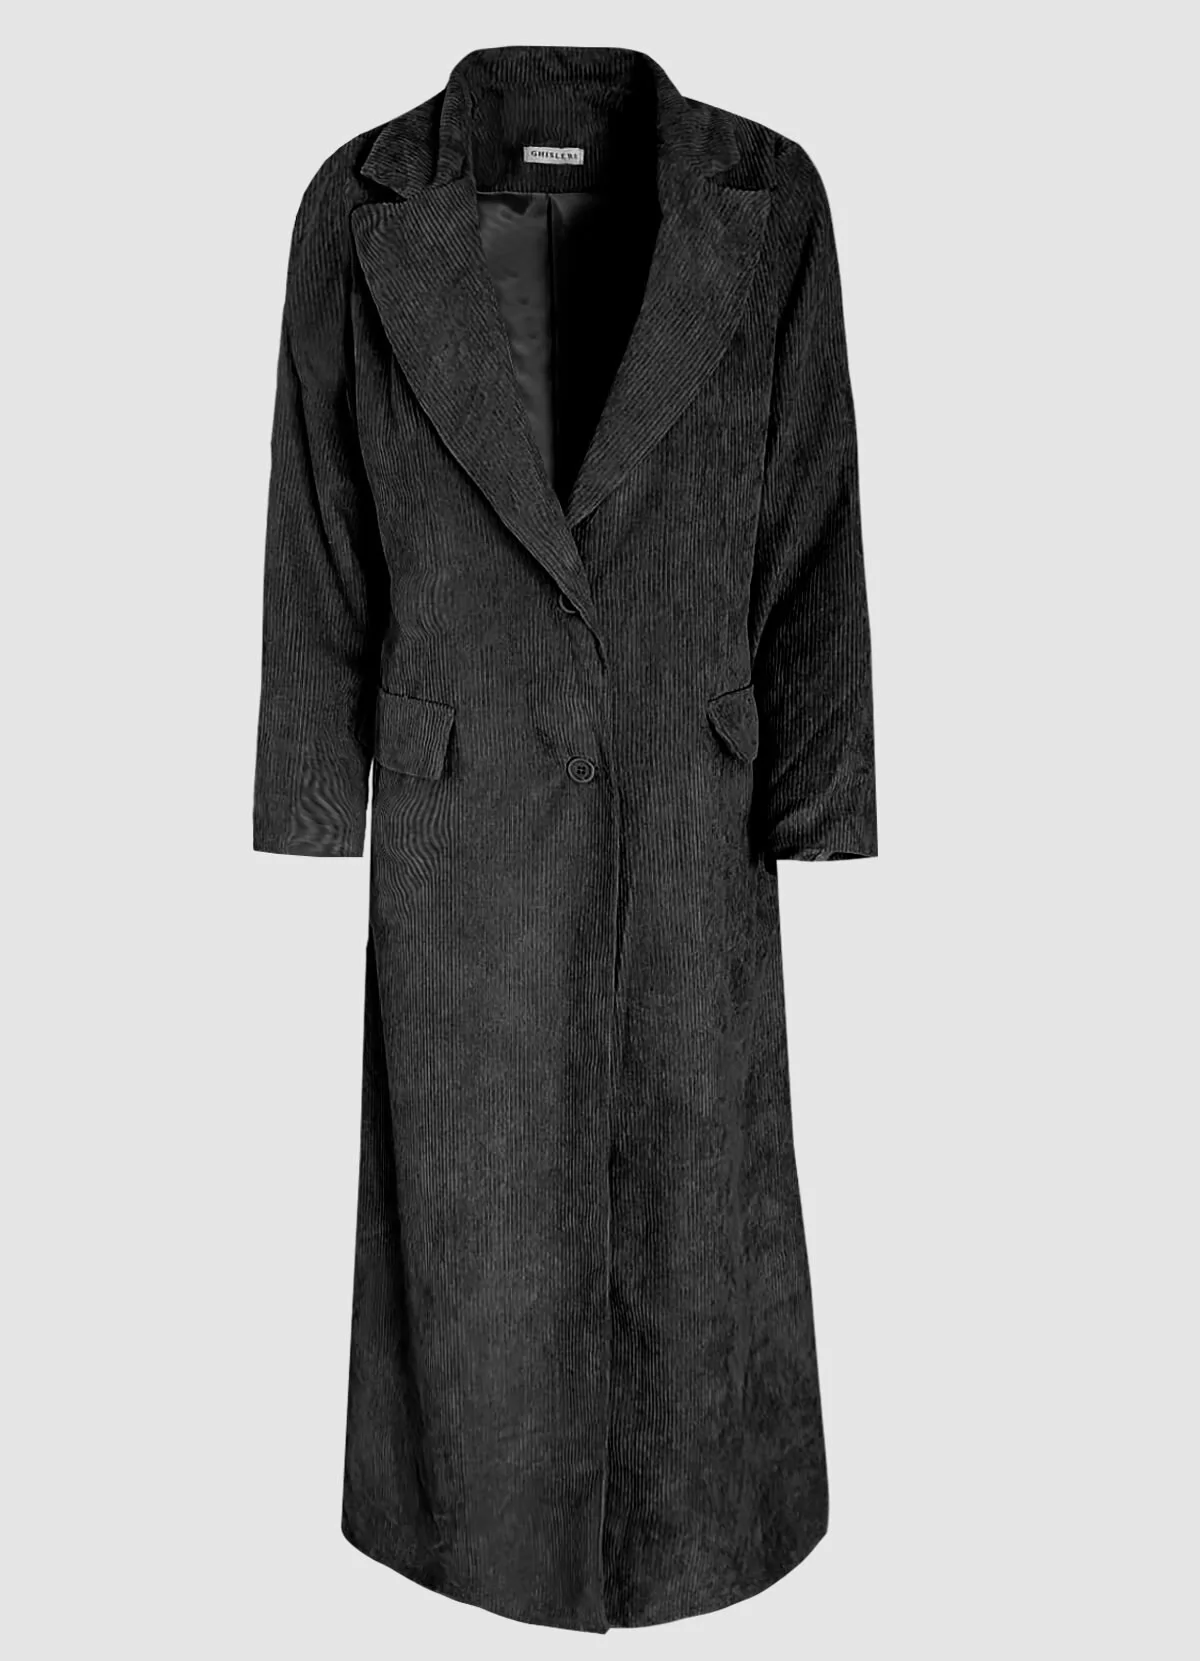 κοτλέ μακρύ παλτό με κουμπιά - Parizianista.gr